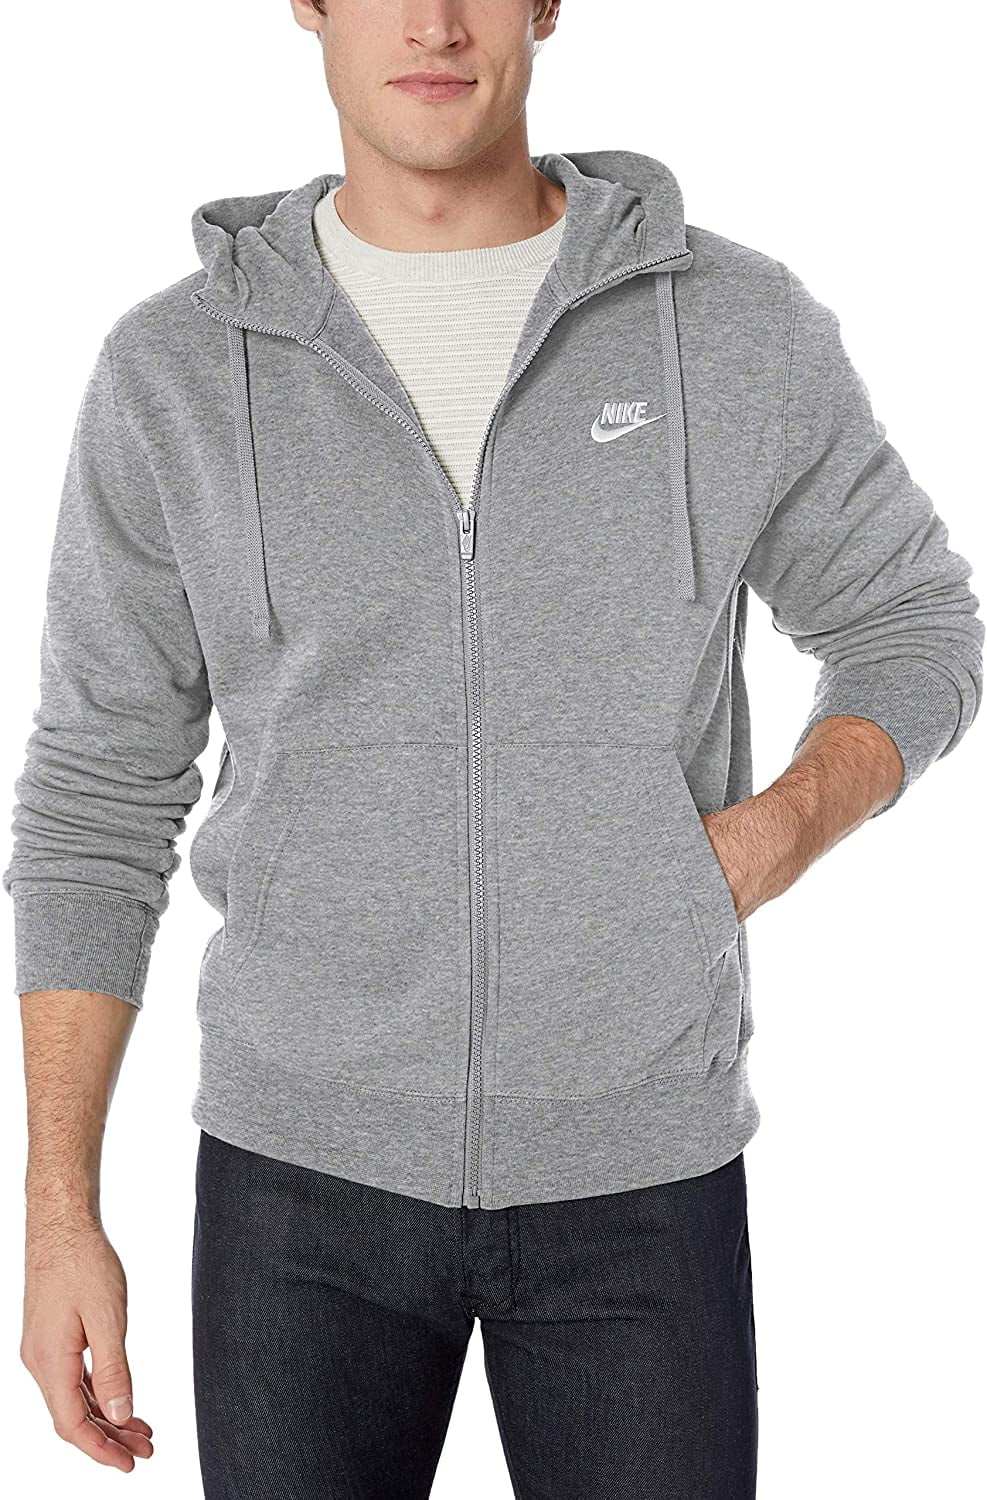 mens nike grey zip up hoodie